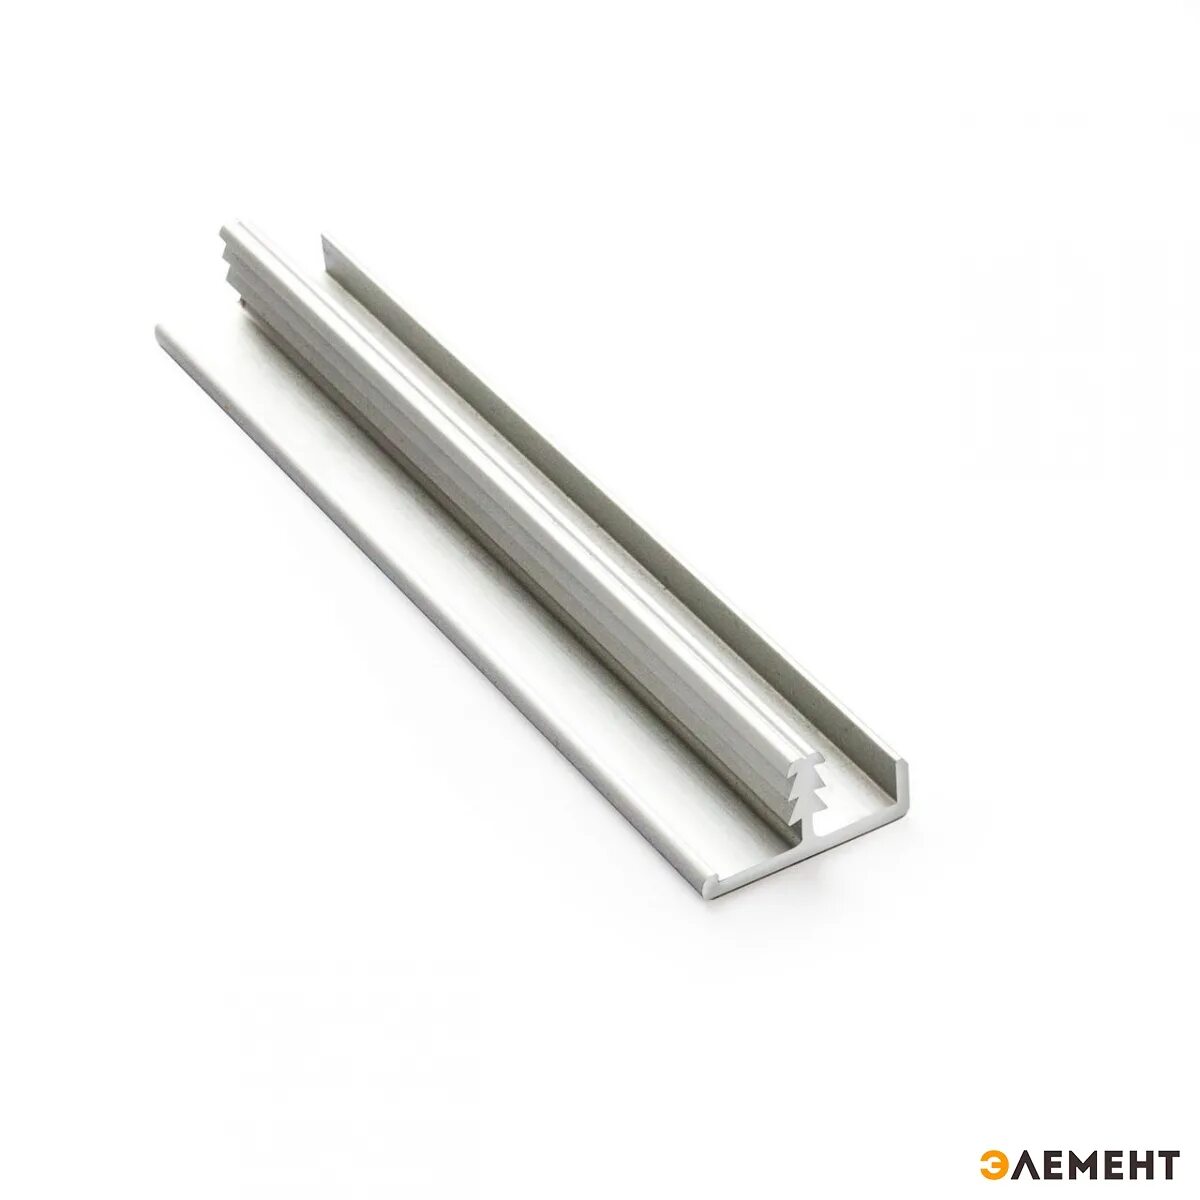 Торцевой алюминиевый профиль для ЛДСП 16 мм. Т-образный профиль алюминиевый 16мм ЛДСП. Профиль кромочный алюминиевый для ДСП 16 мм. Торцевой профиль для ЛДСП 16 мм.